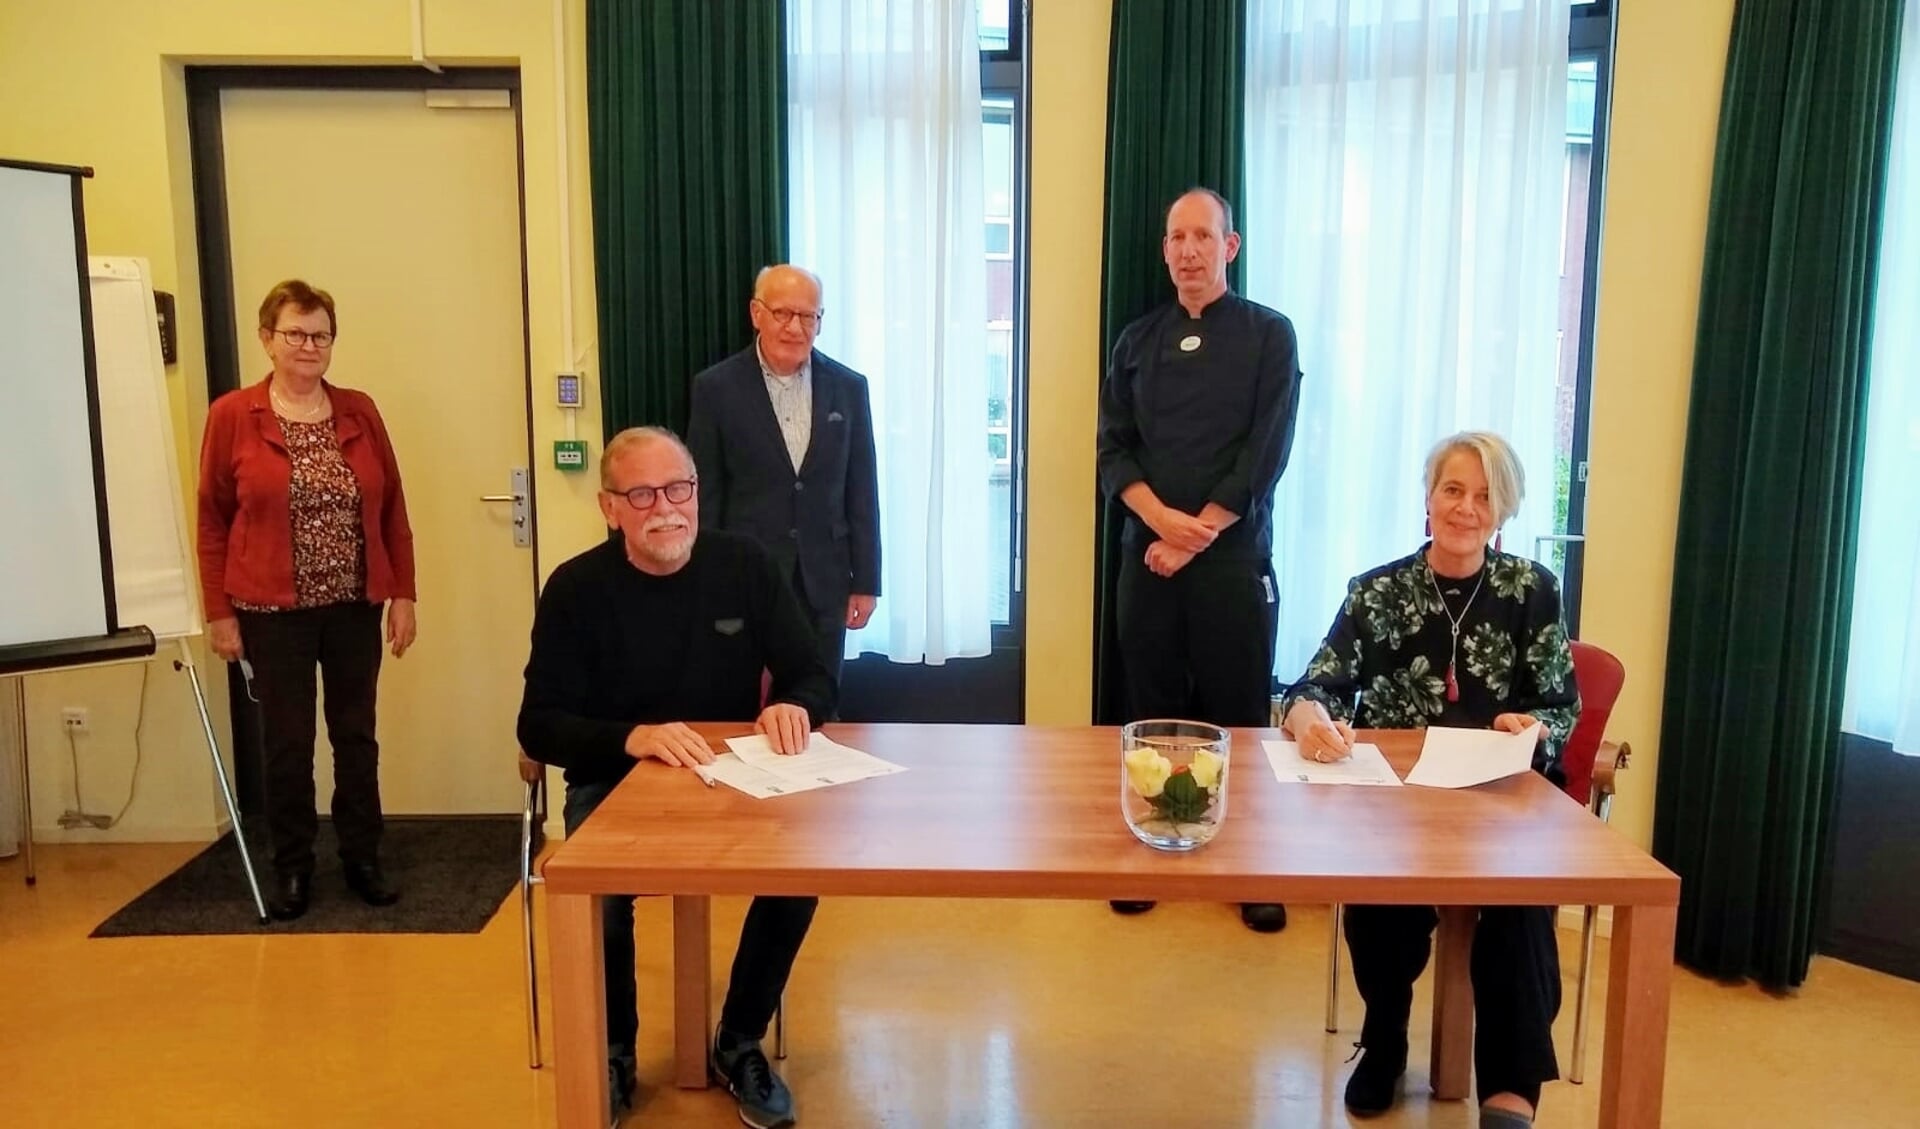 • De ondertekening, met van links naar rechts Dini Resseler (secretaris VHG), Johan de Kruijk (voorzitter VHG), Egbert Hamerpagt (penningmeester VHG), Barend de Zwart (souschef Present) en Janneke Louisa-Muller (bestuurder Present).